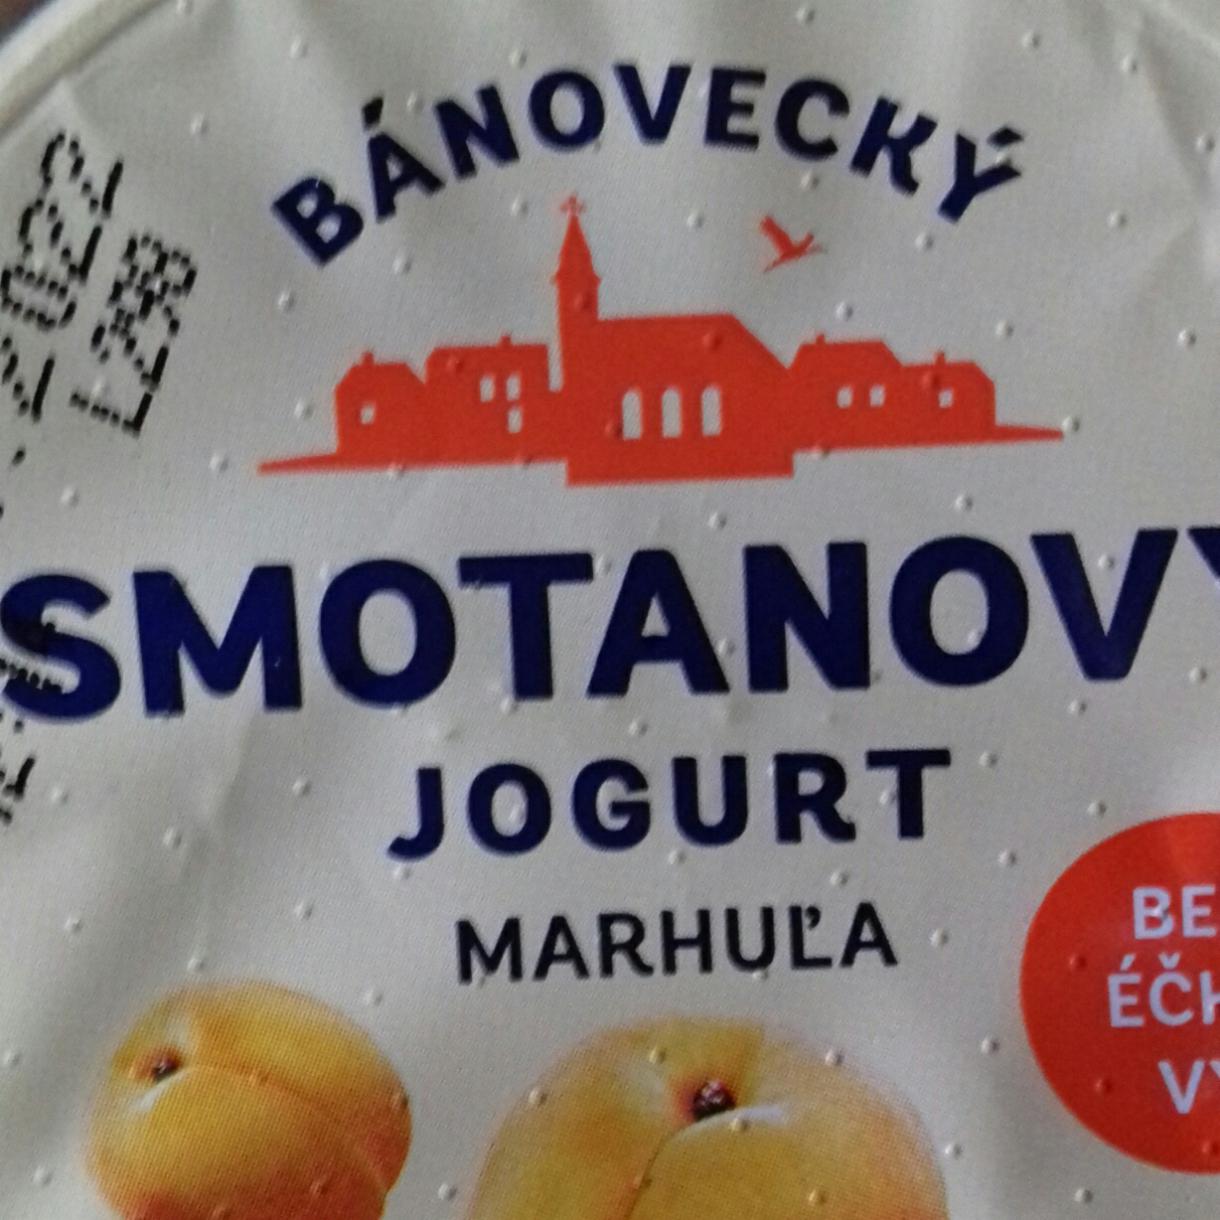 Fotografie - Bánovecký smotanový jogurt marhuľa